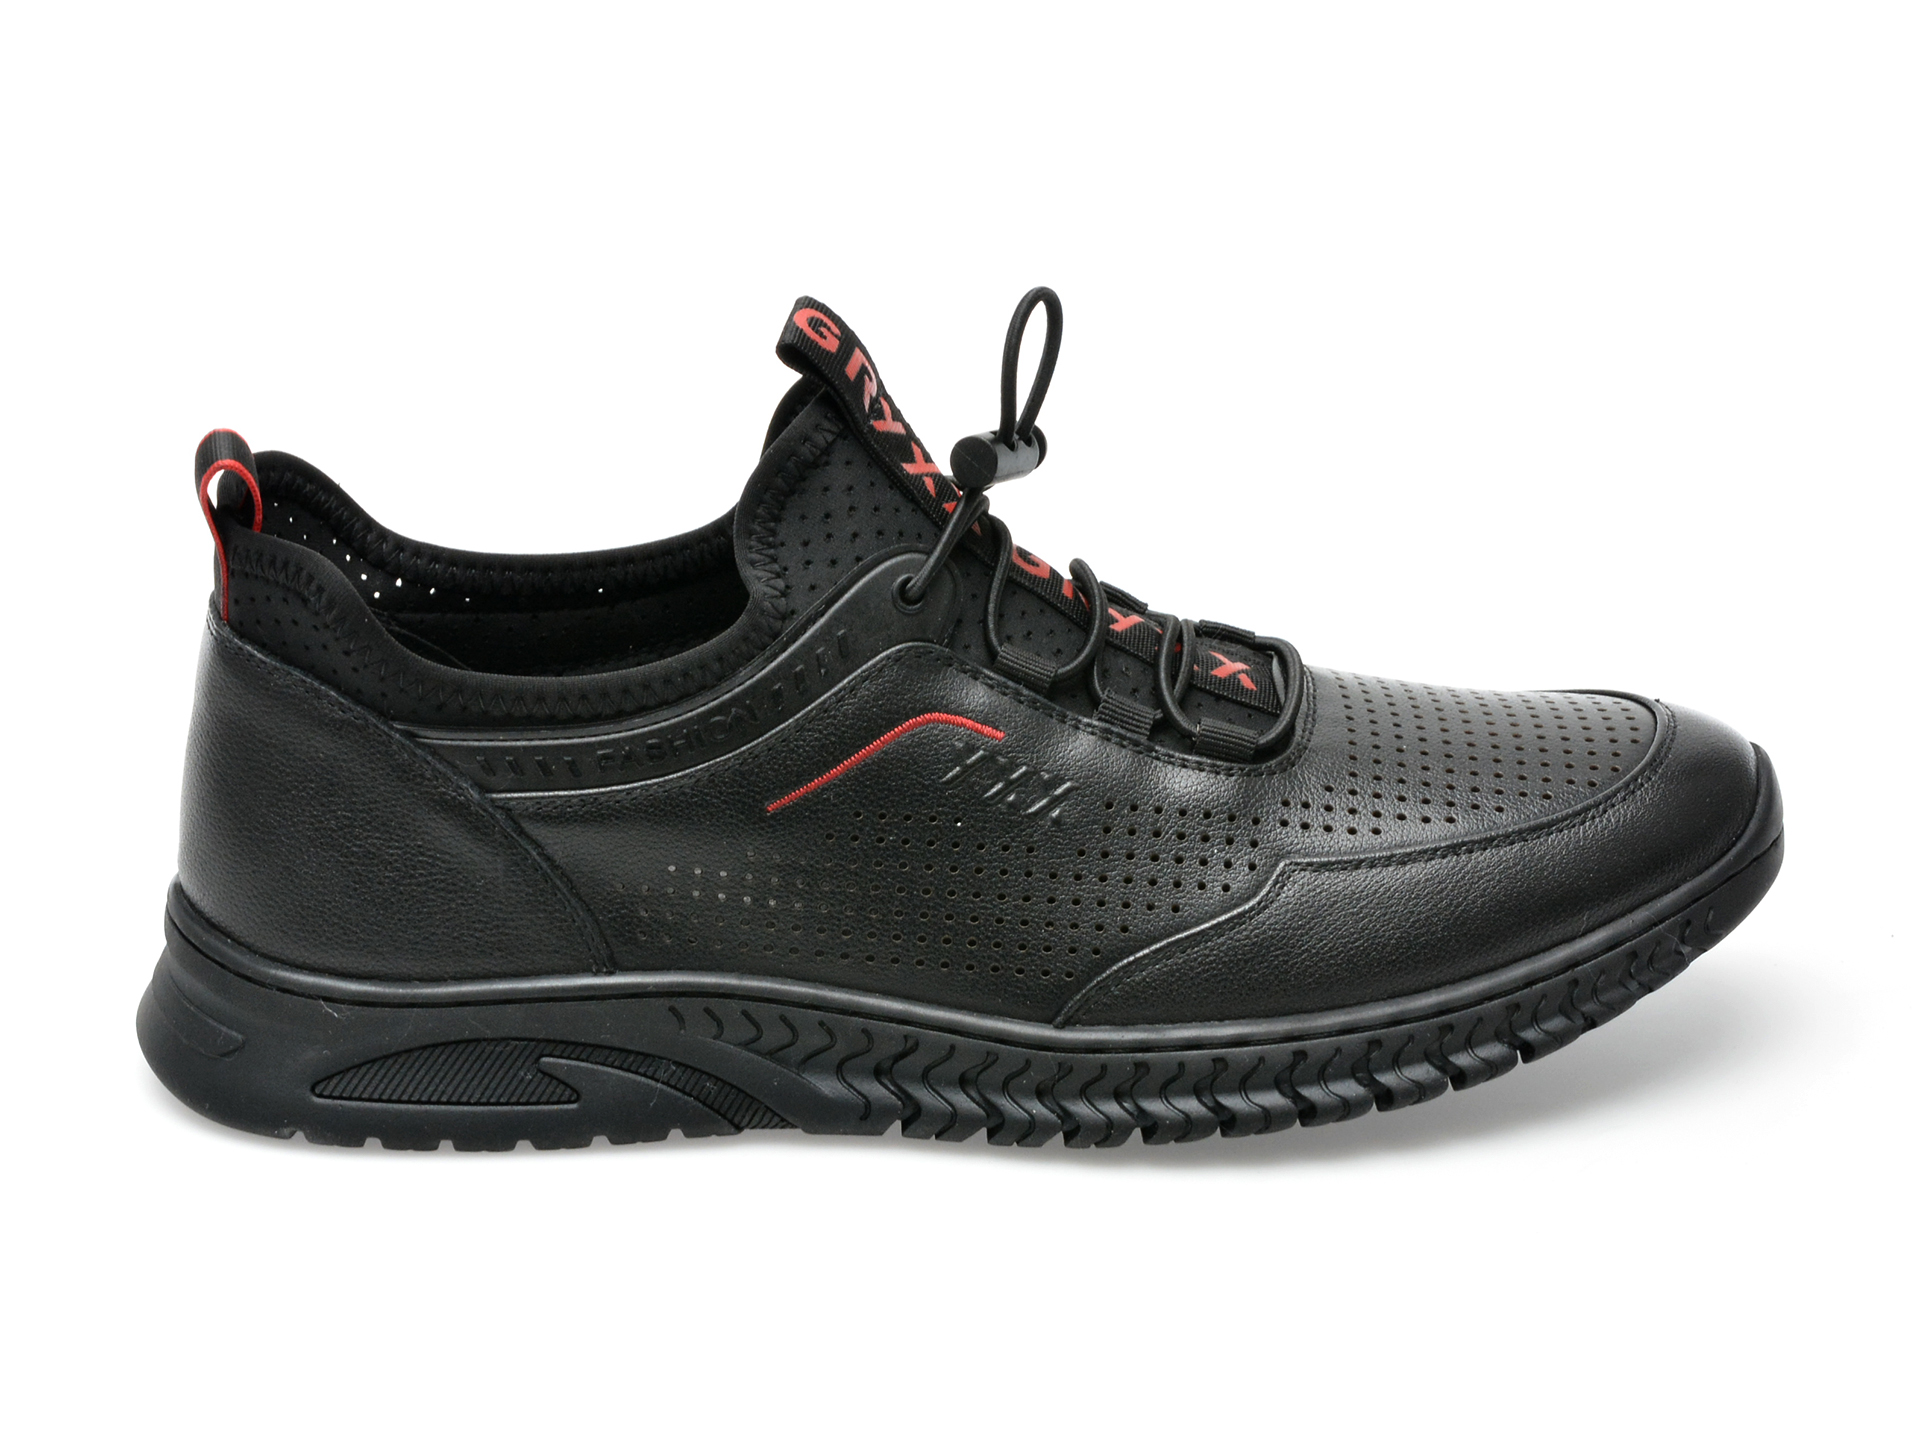 Poze Pantofi sport GRYXX negri, E620010, din piele naturala Tezyo